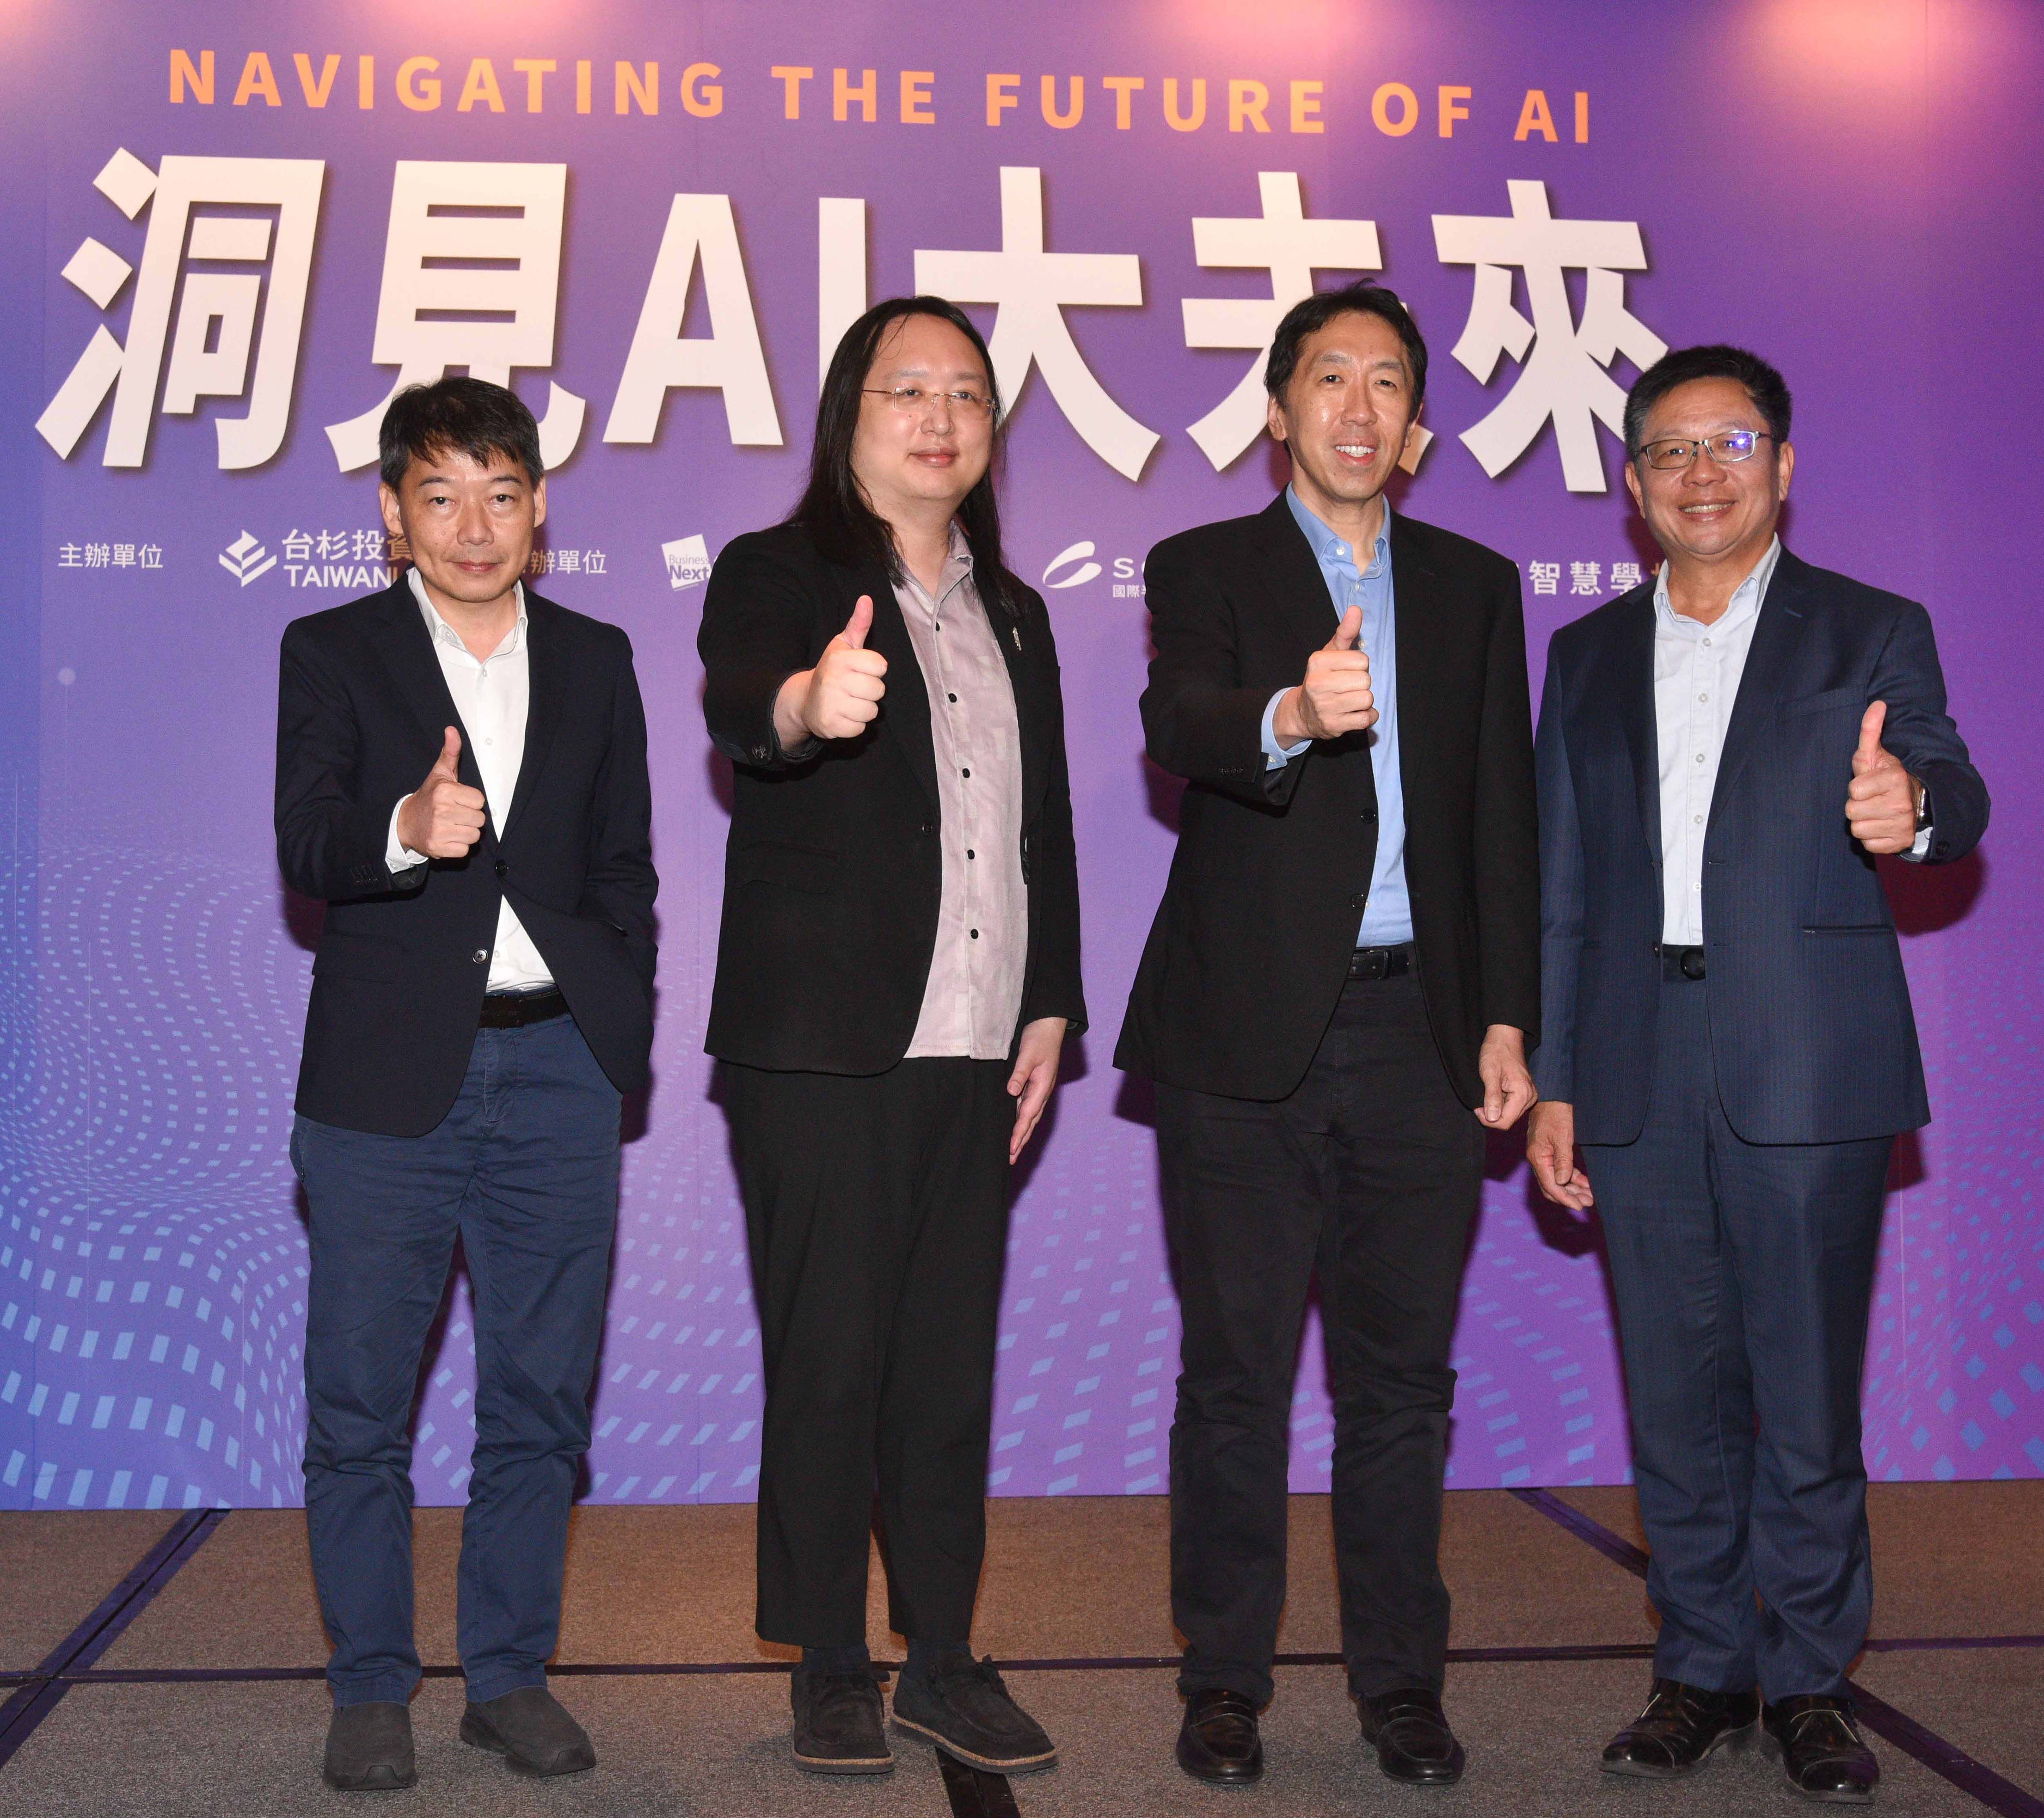 ▲▼「洞見AI大未來」論壇邀請AI領袖共談AI大未來。圖由左至右為數位時代總編輯王志仁、數位發展部部長唐鳳、Landing AI創辦人暨執行長吳恩達（Andrew Ng）、台杉投資總經理翁嘉盛。（圖／台杉投資提供）